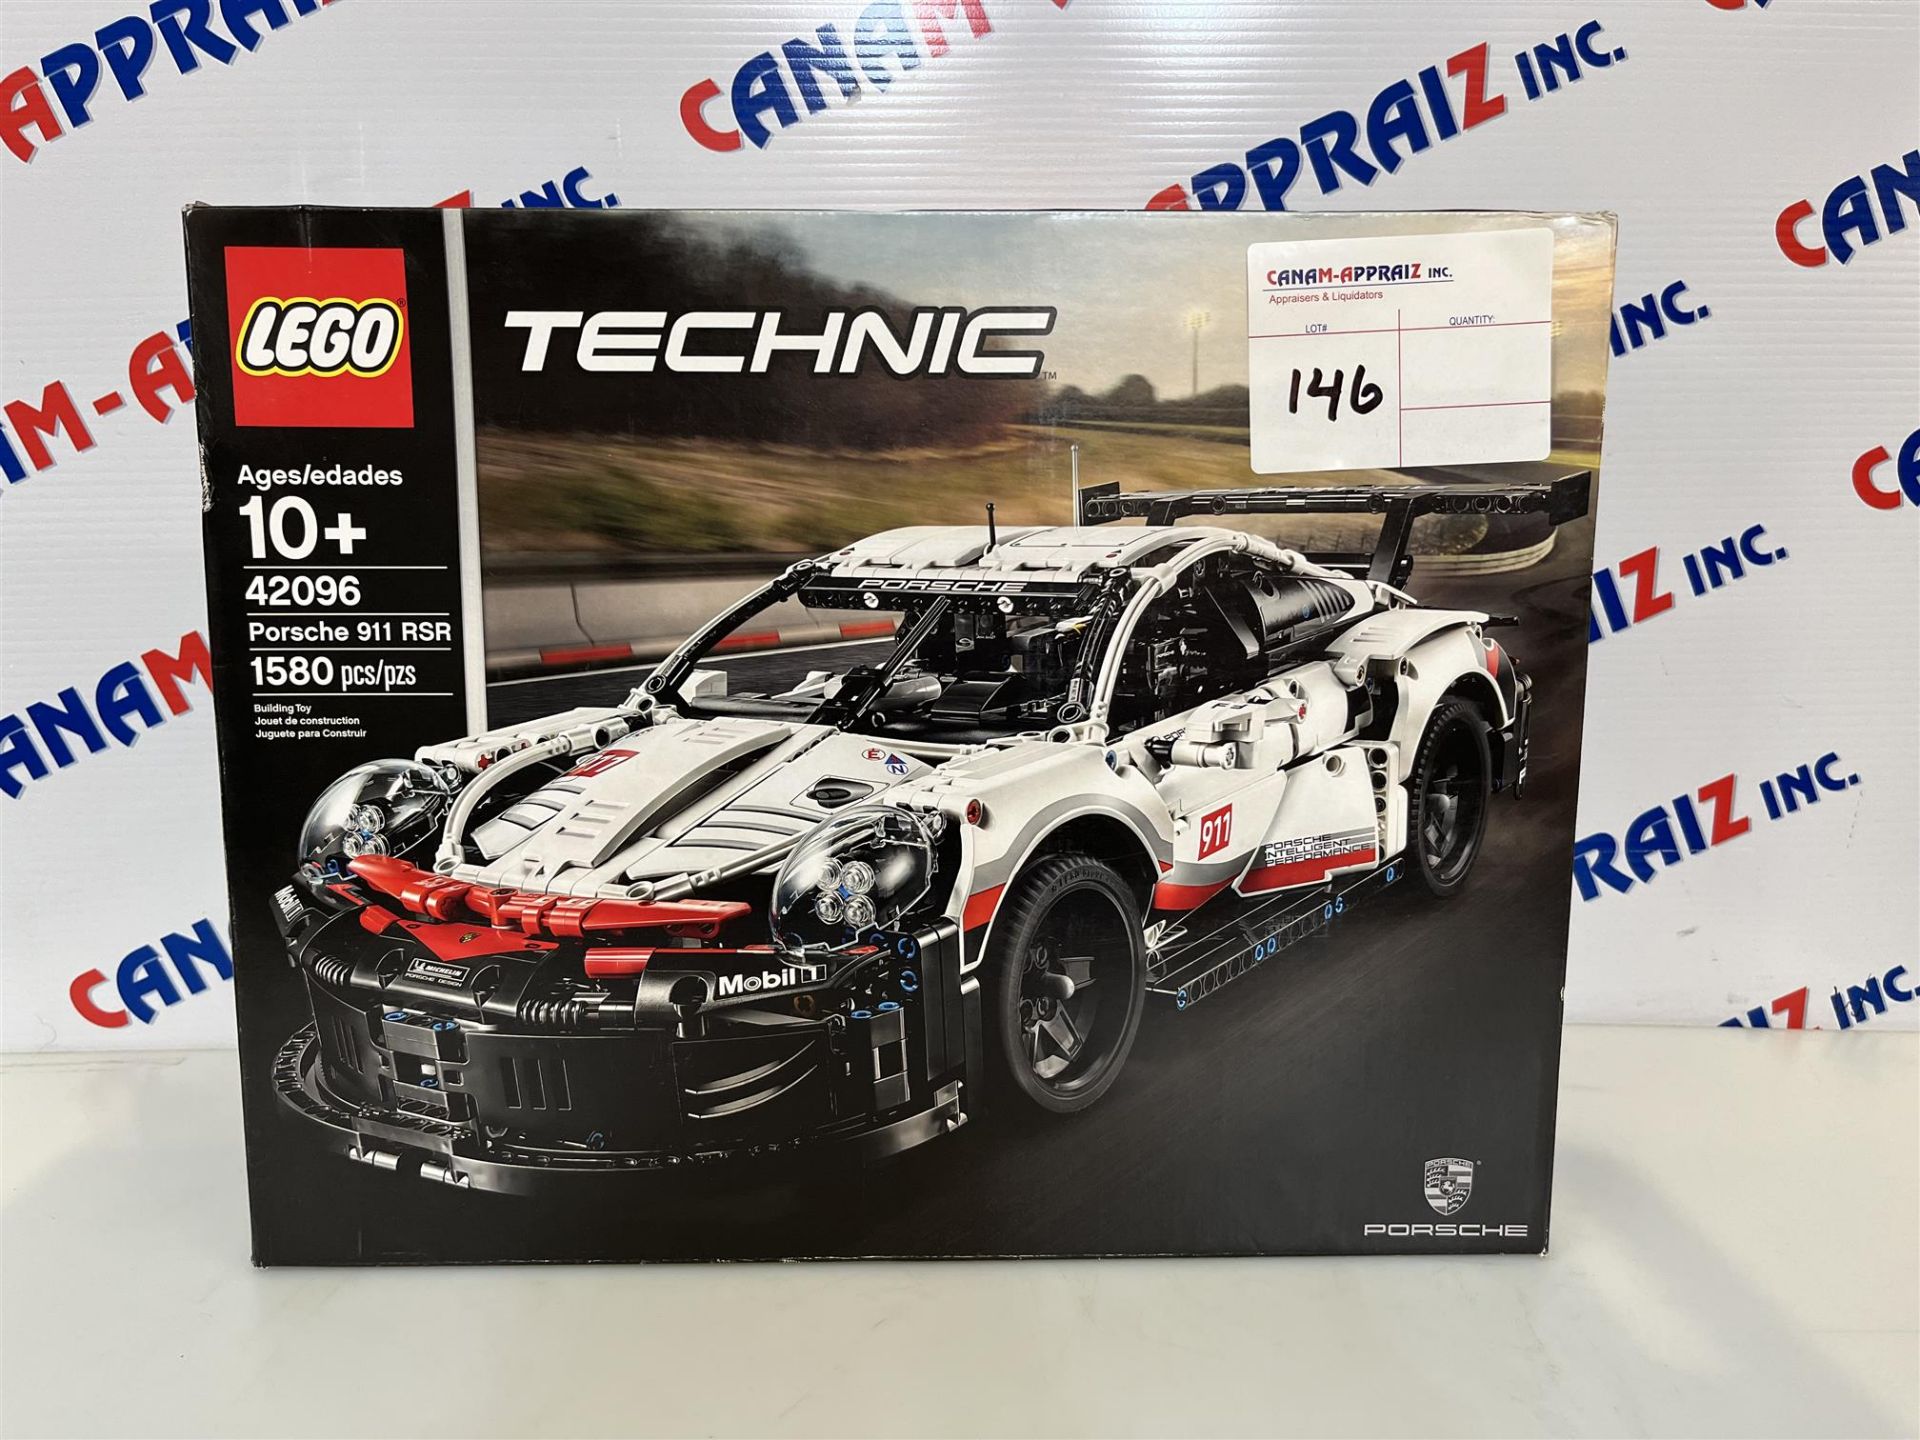 Lego Technic Porsche 911 RSR 42096 - Ages 10+ - 1580 PCS